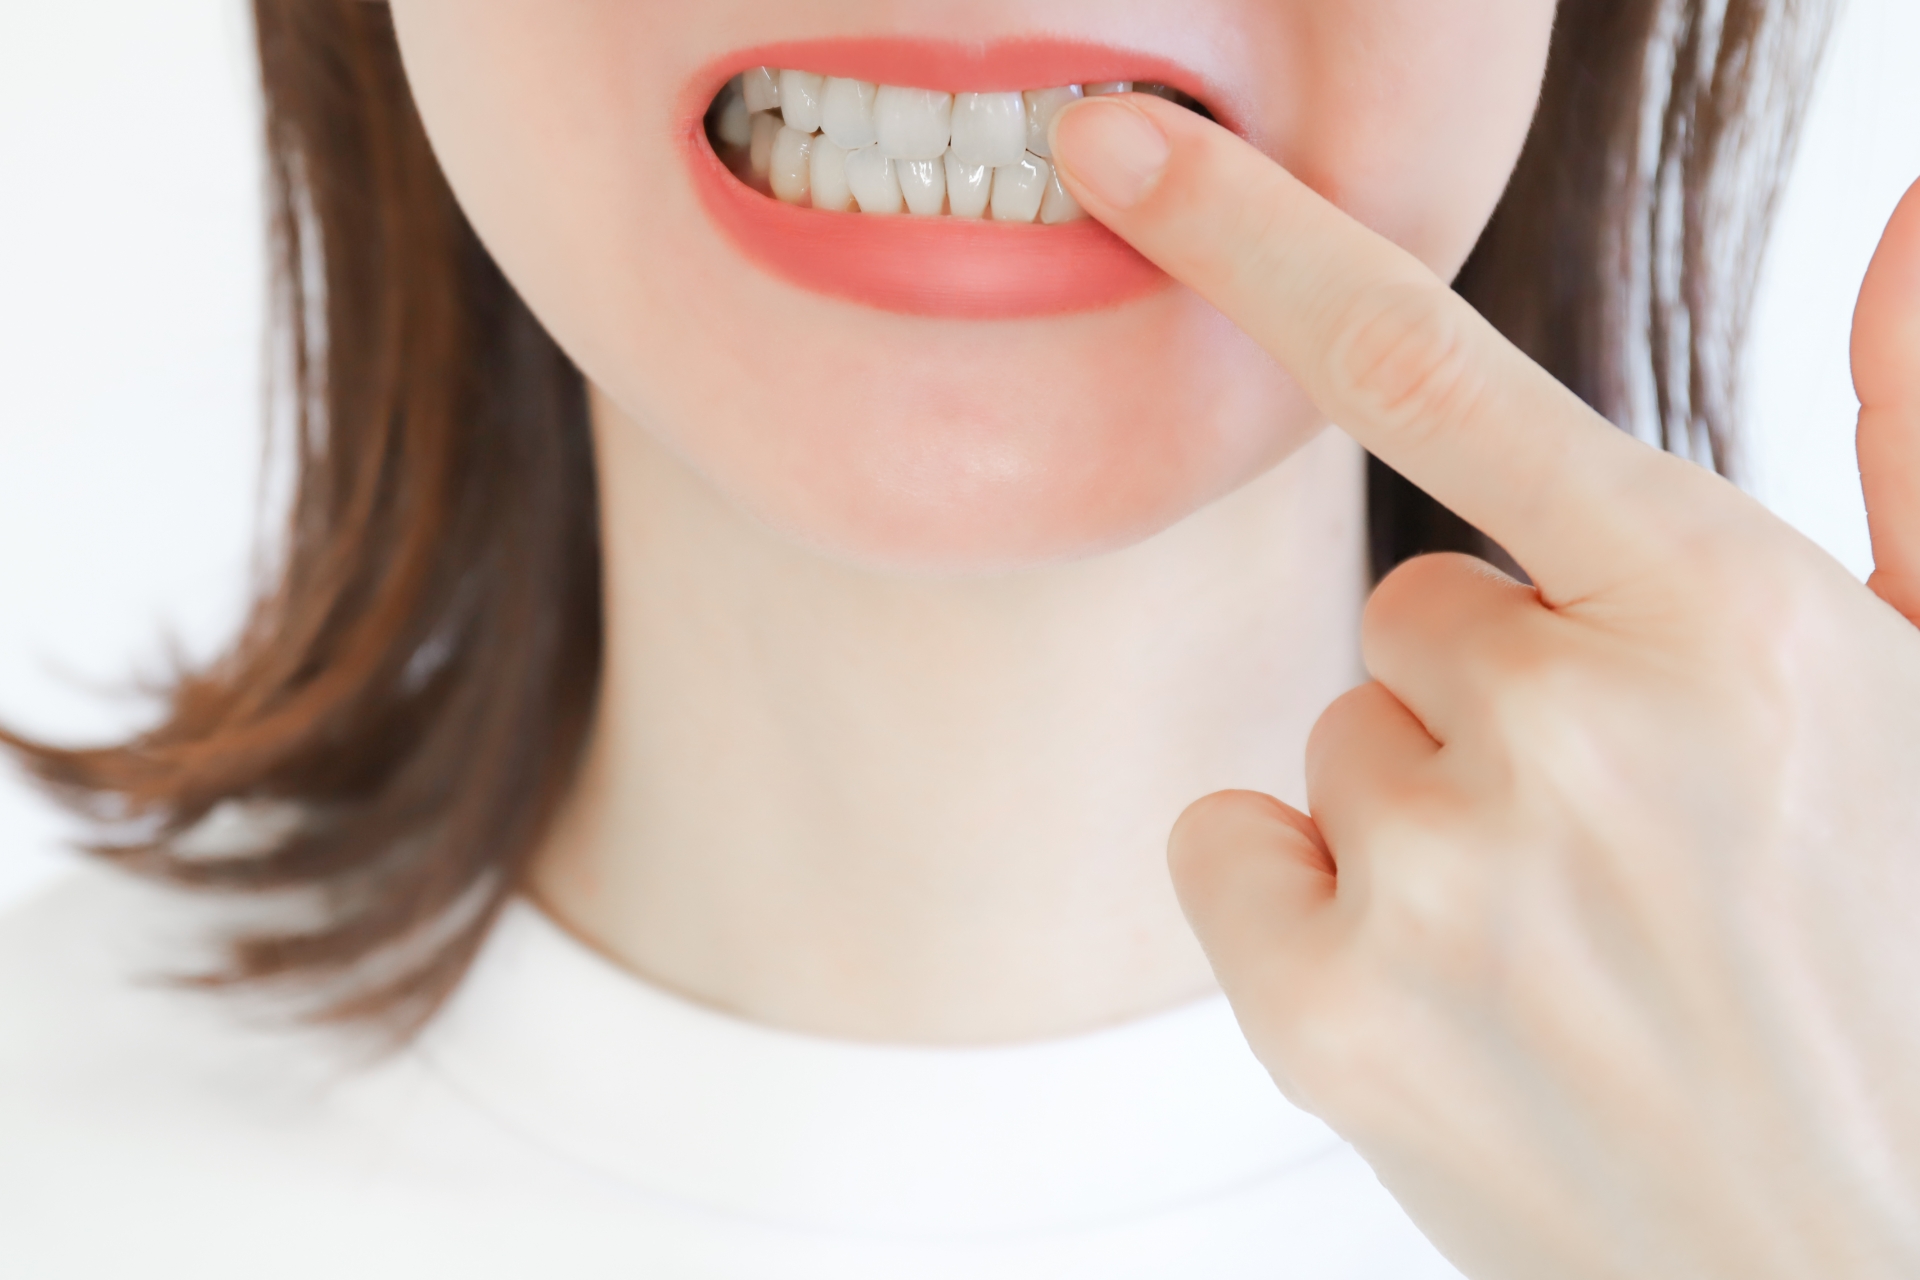 インビザライン以外での出っ歯の矯正治療の選択肢